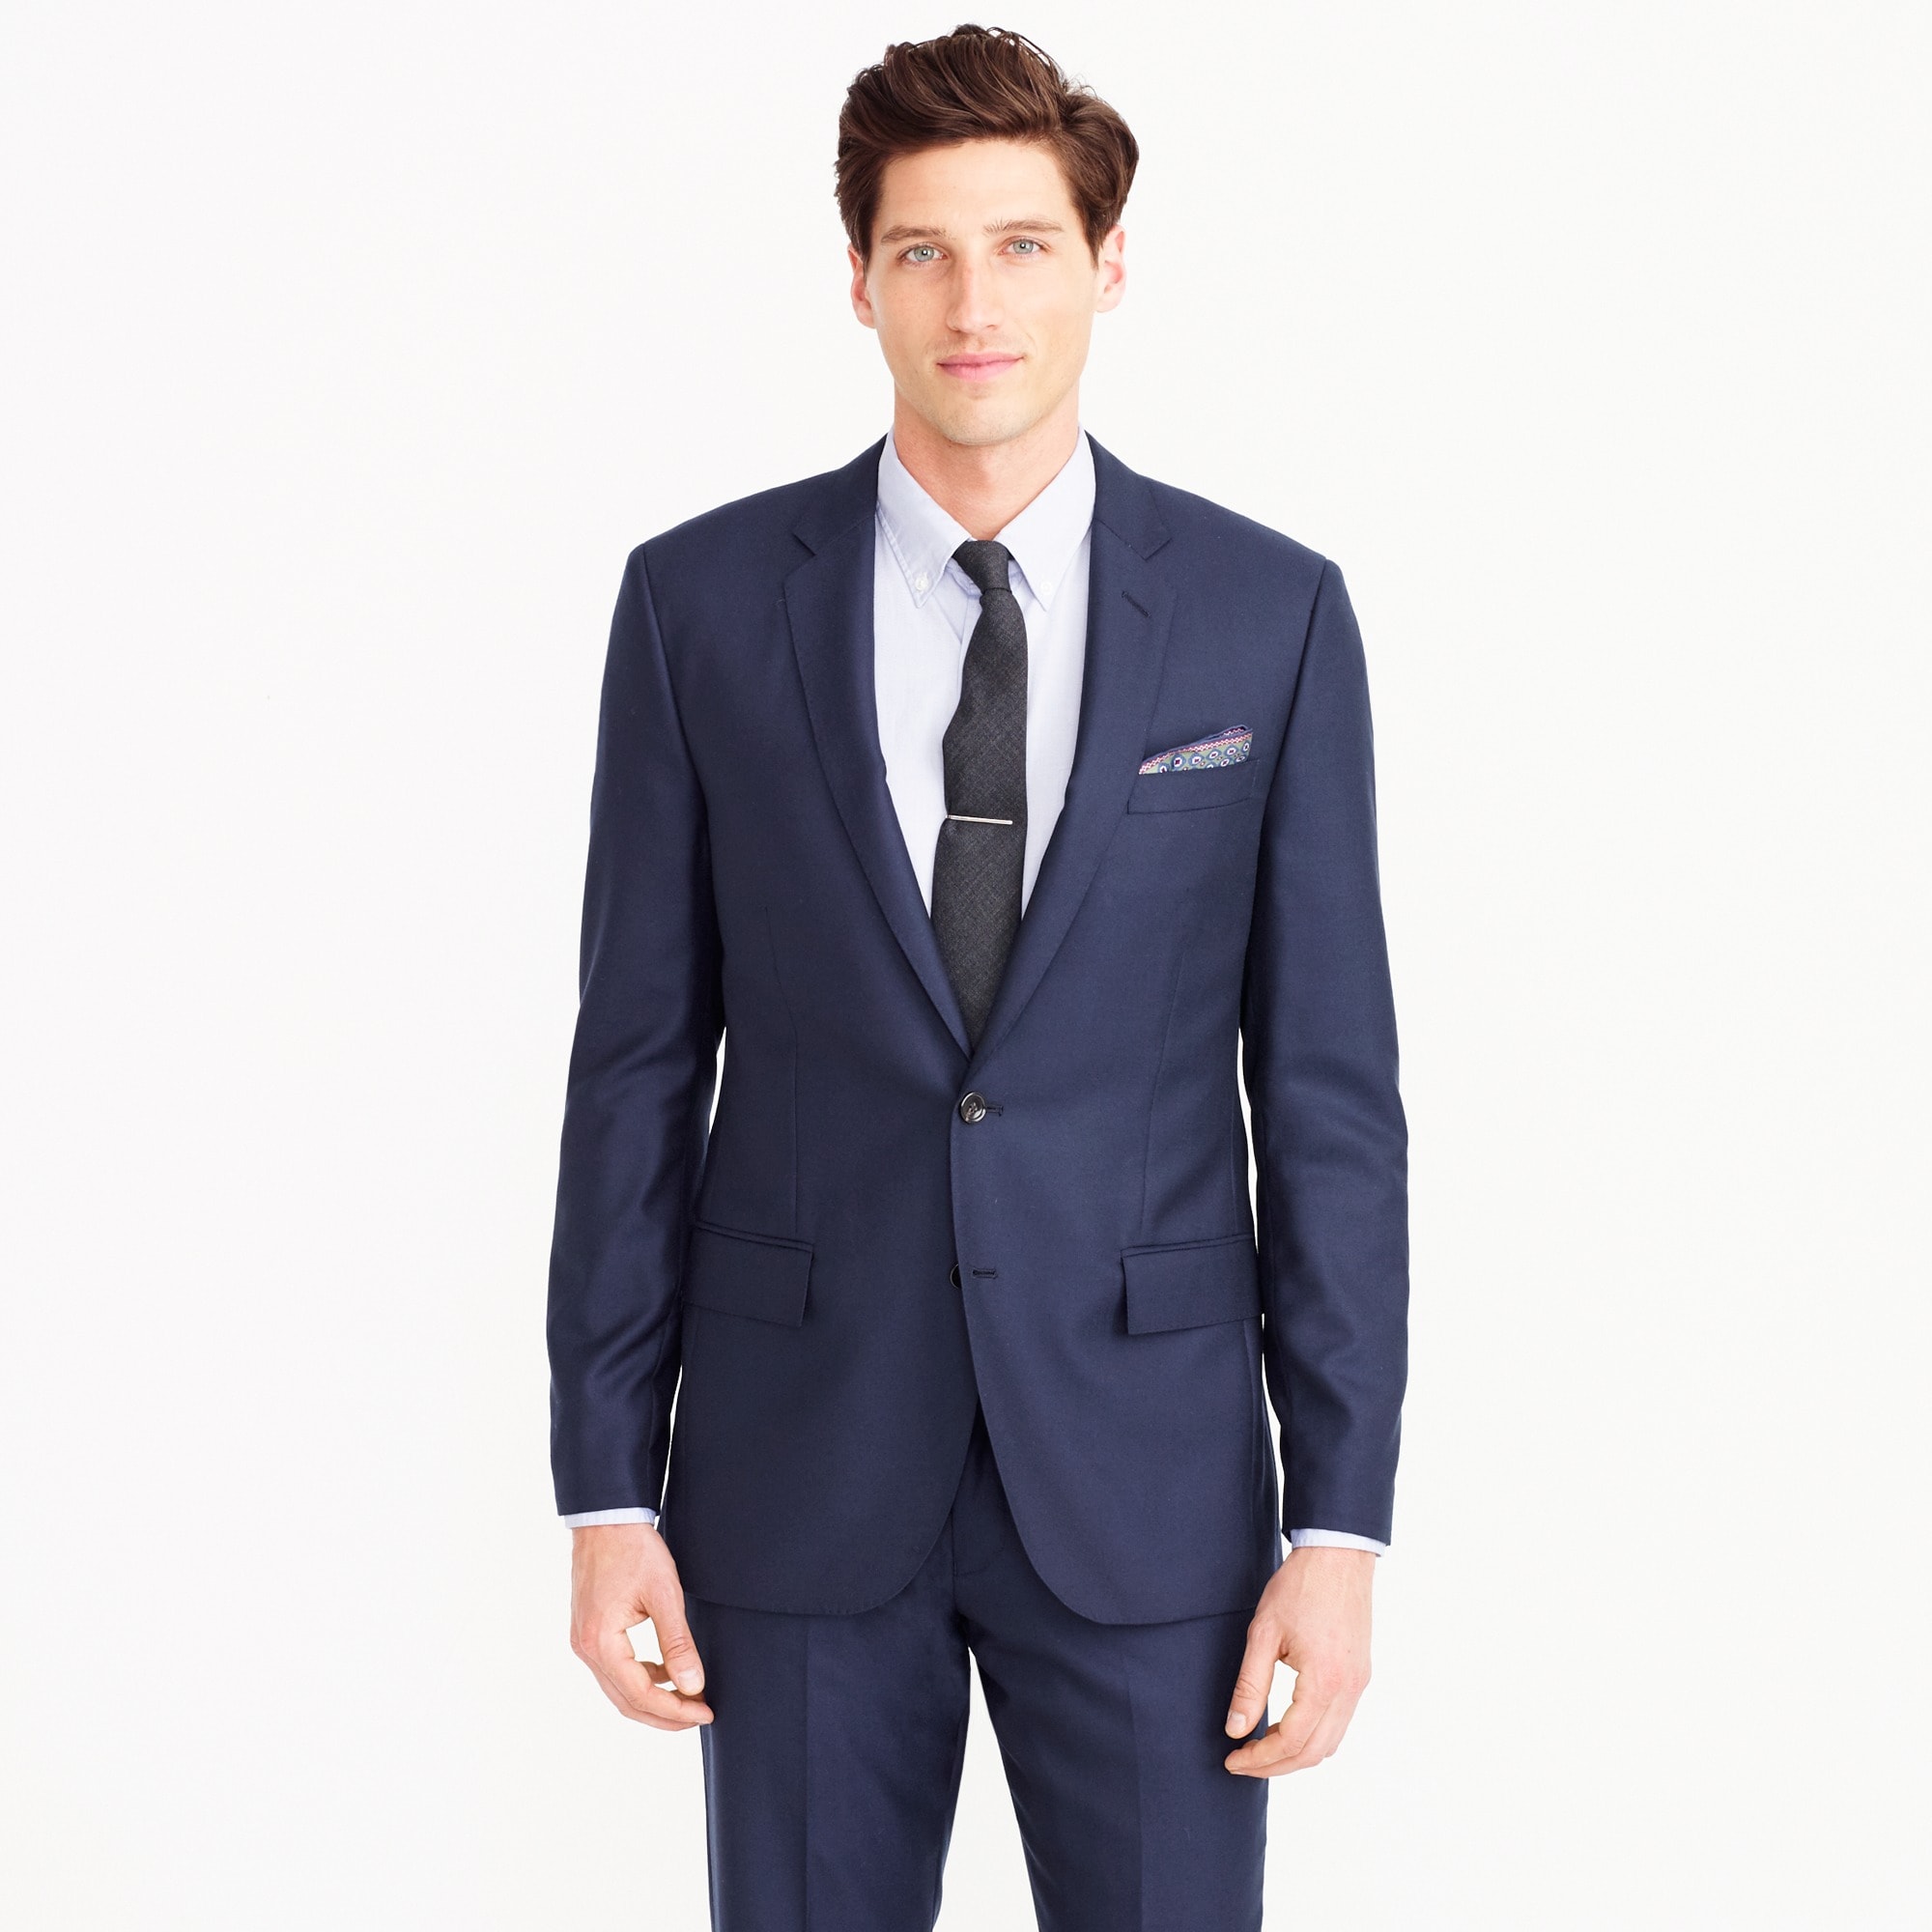 men's suit jackets under $50